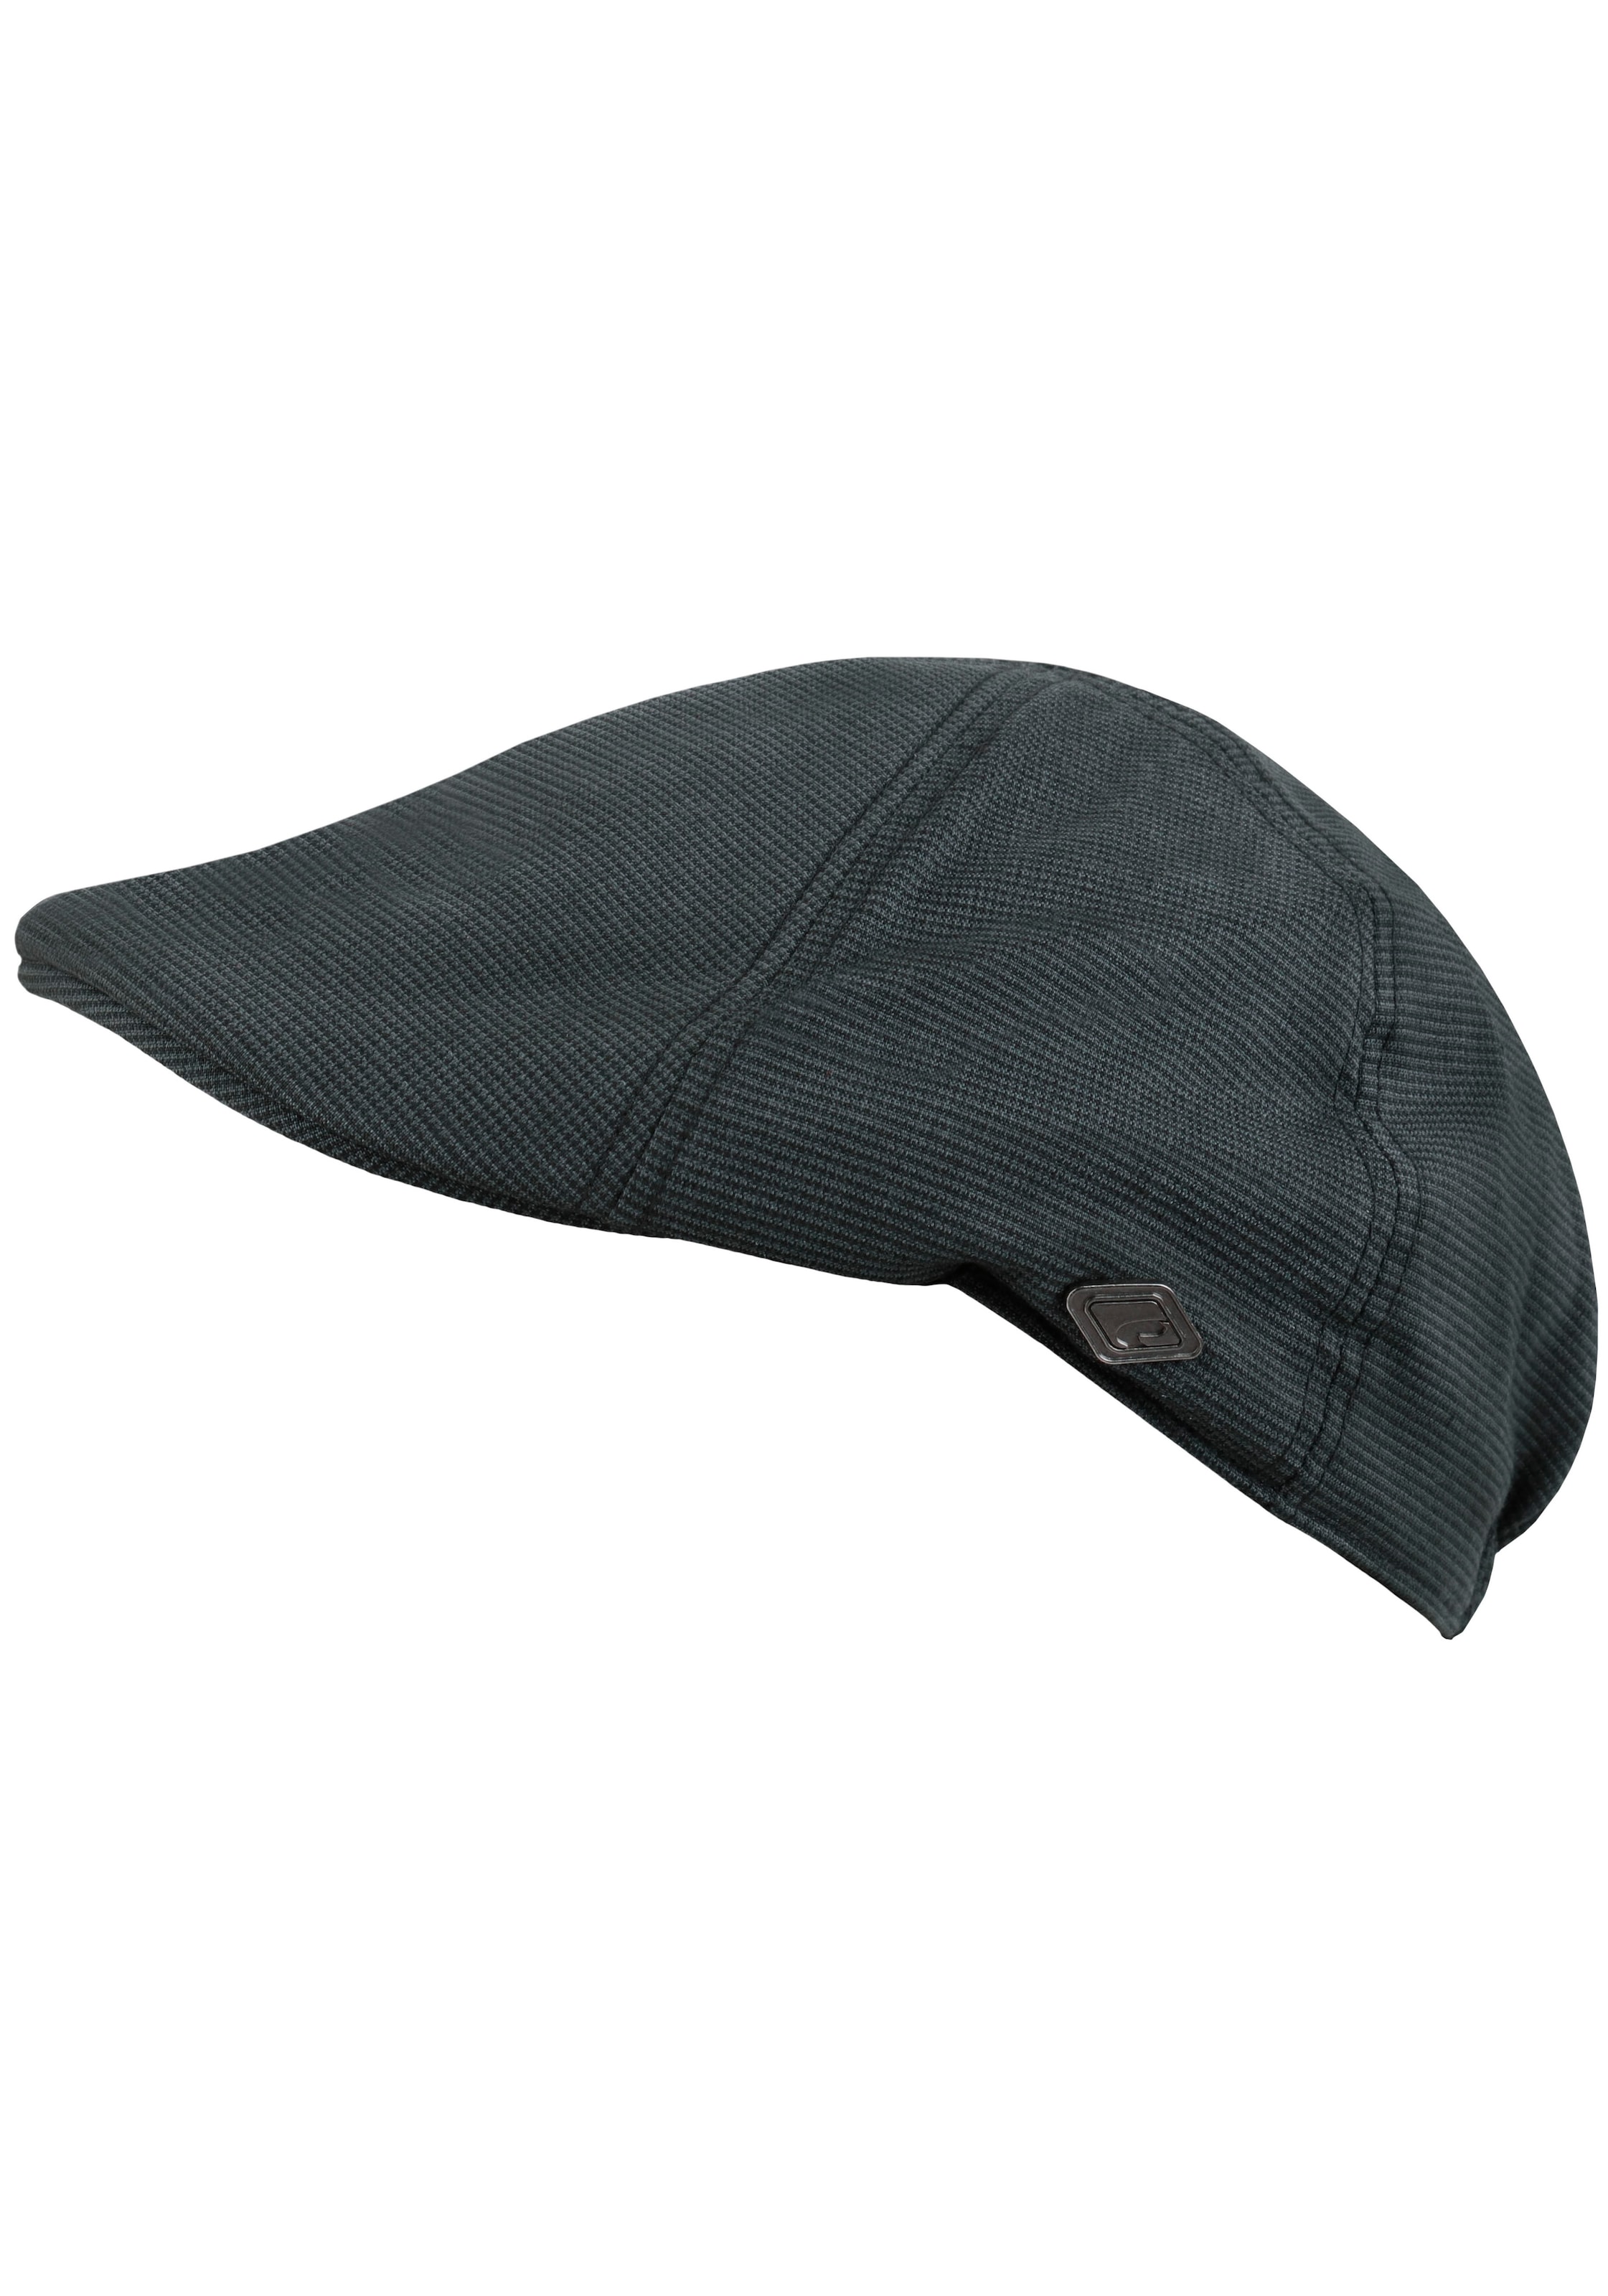 chillouts Schiebermütze »Kyoto Hat«, Flat Cap mit feinem Karomuster